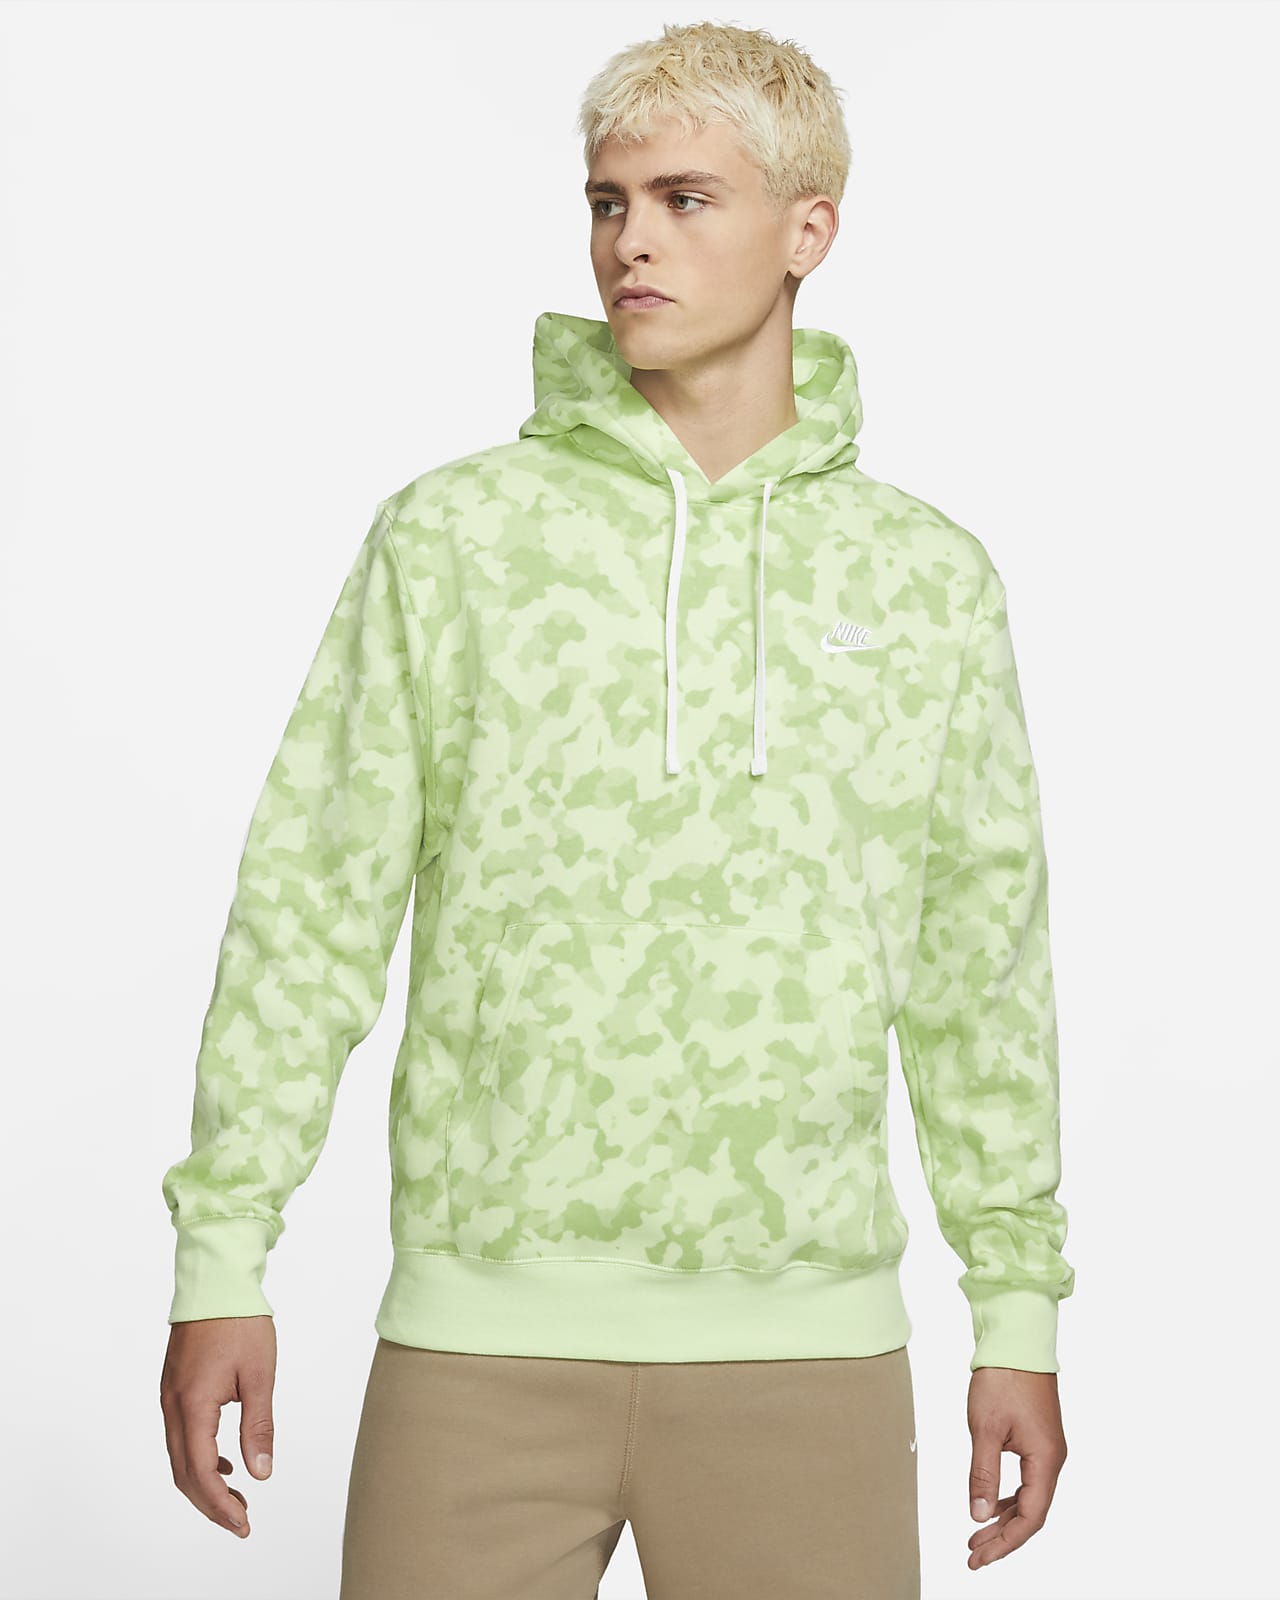 neon green hoodie nike